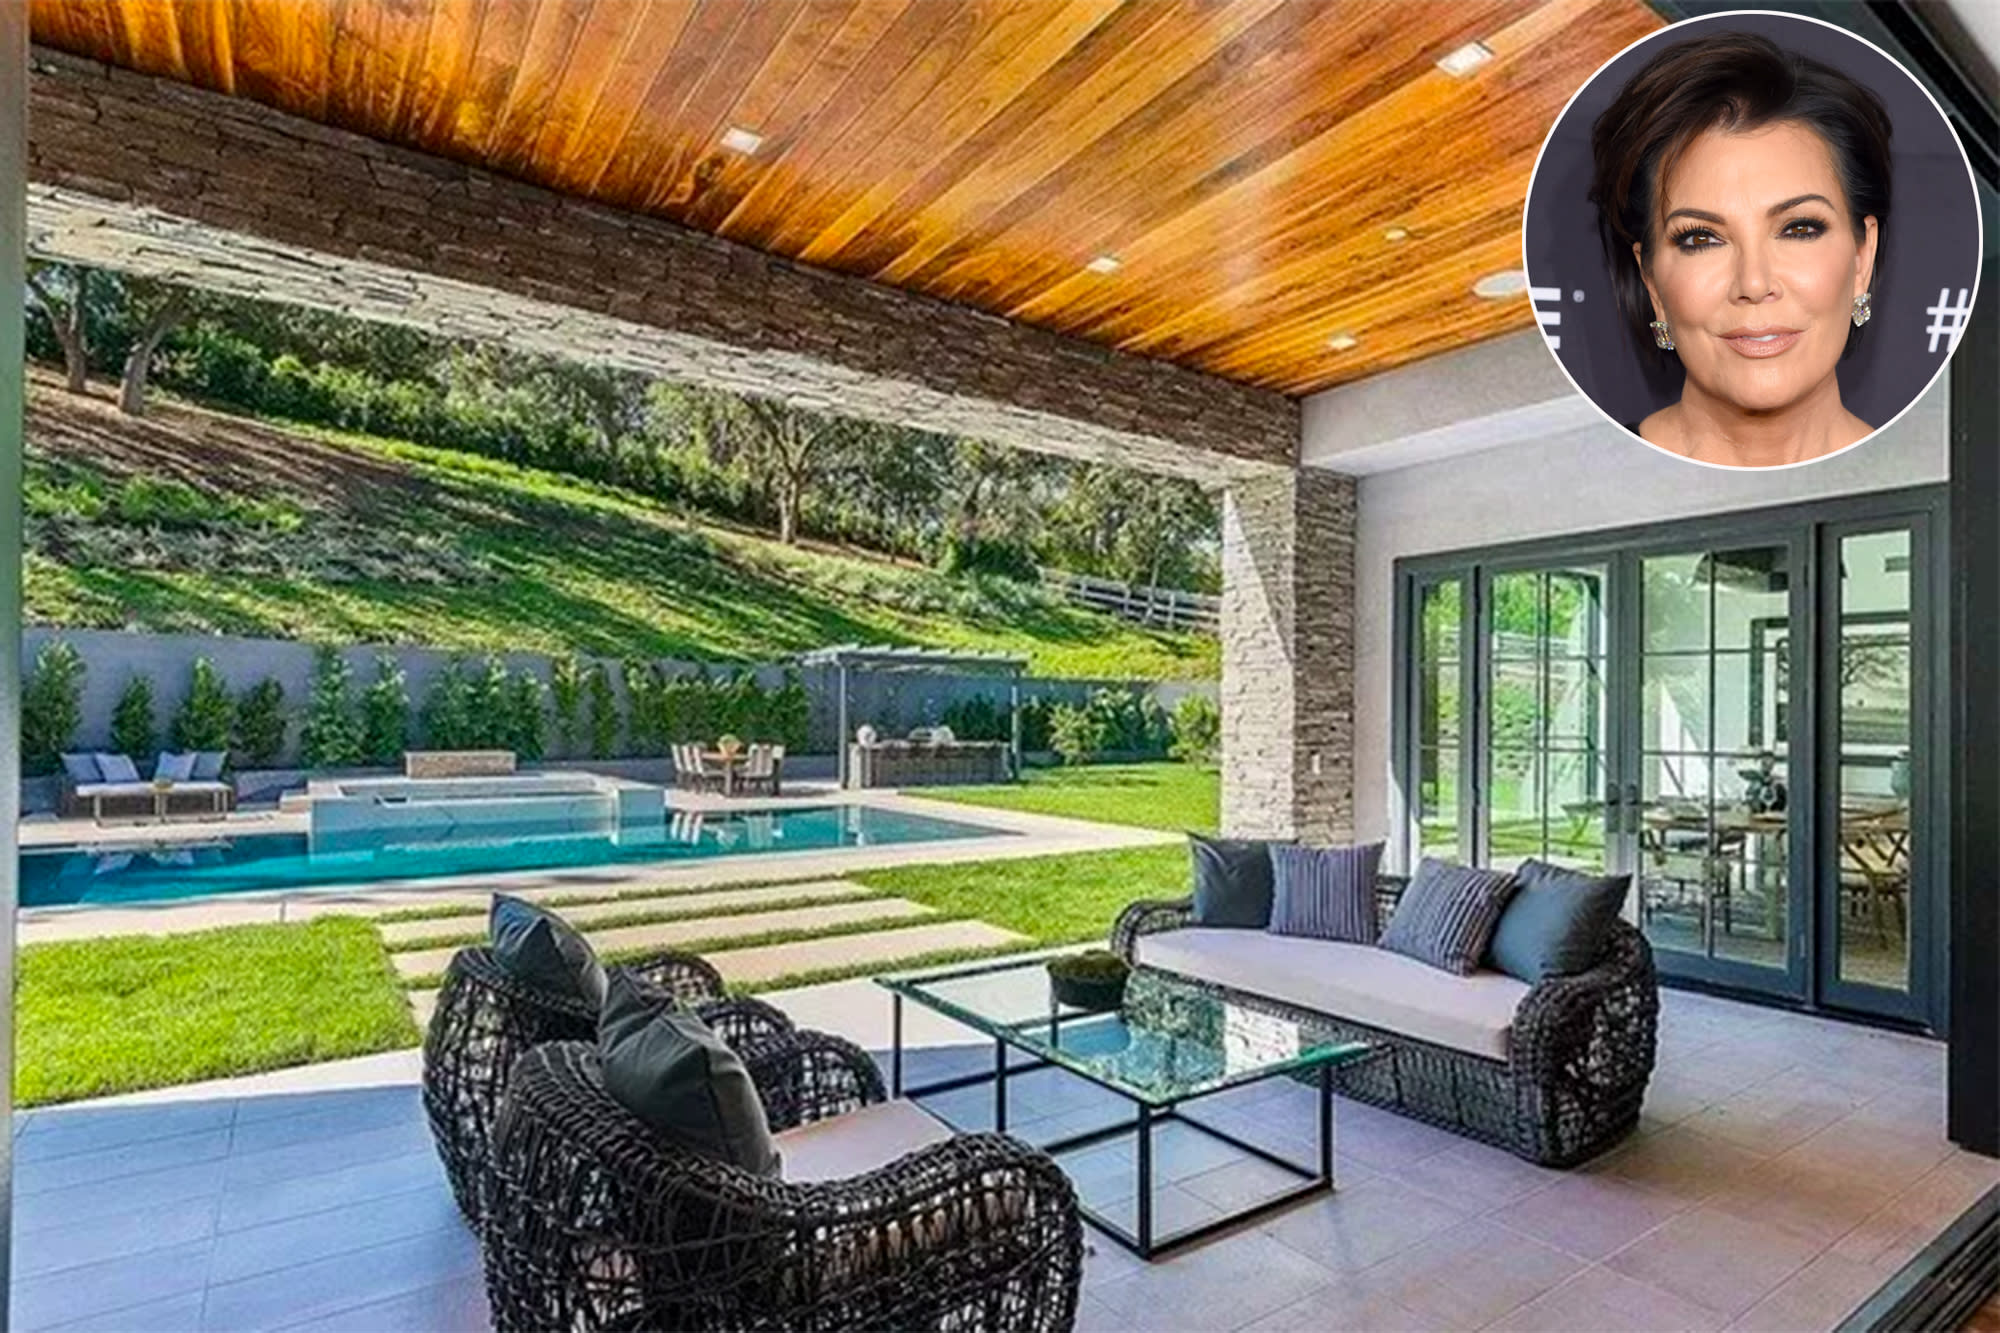 Kris Jenner Buys New 9 9 Million Home Across The Street